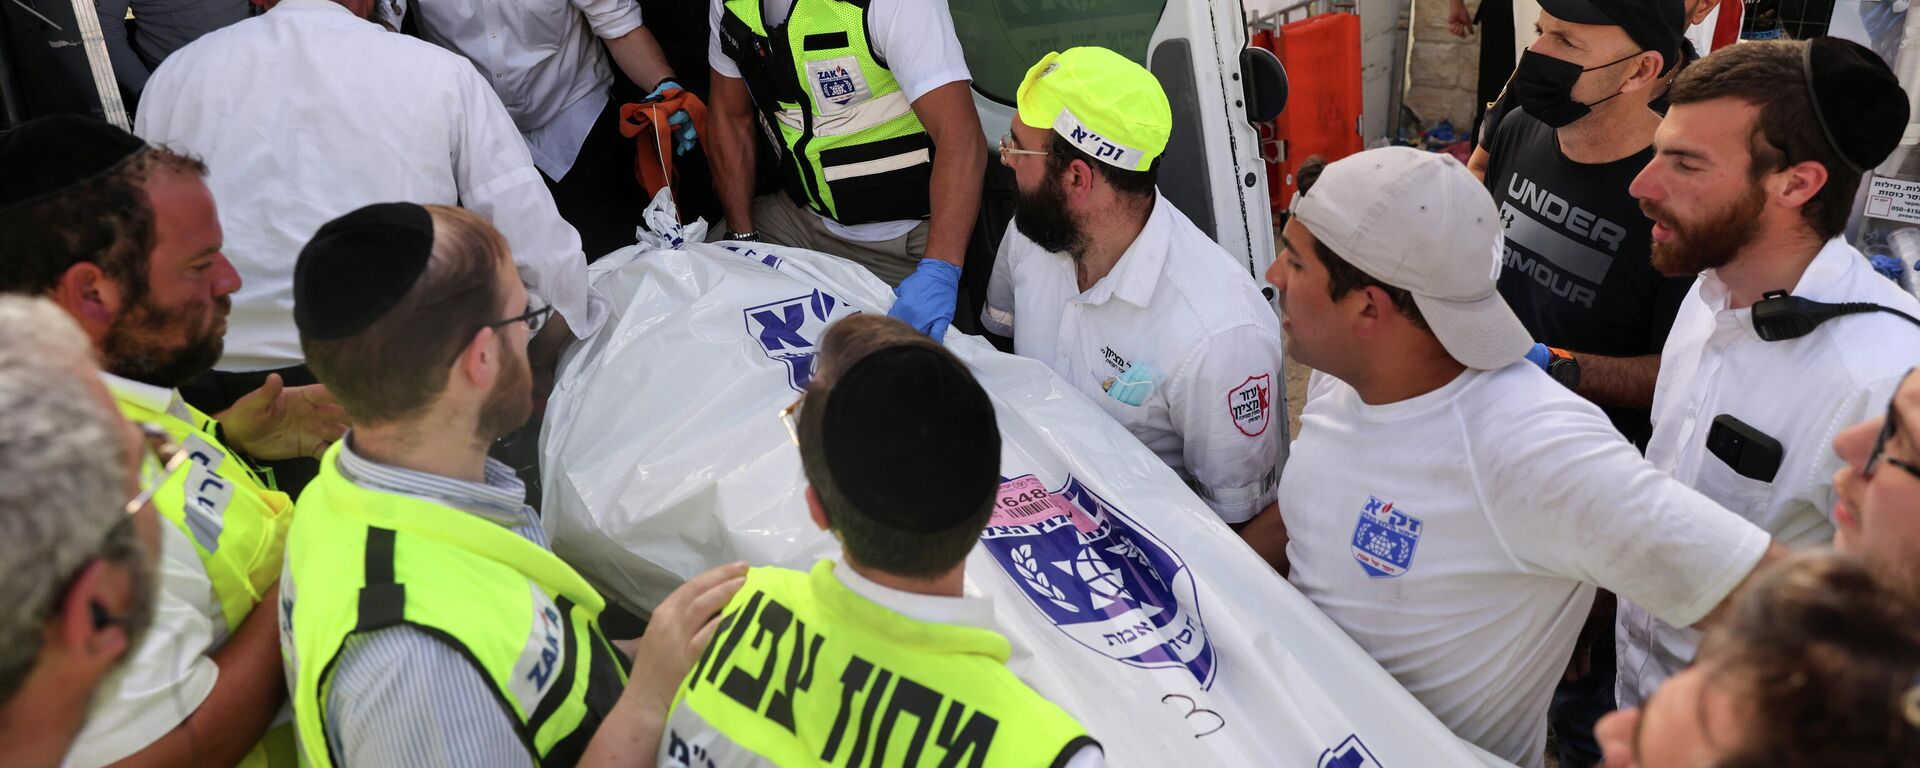 Rescatistas llevan un cadáver a una ambulancia en el Monte Meron, en Israel - Sputnik Mundo, 1920, 30.04.2021